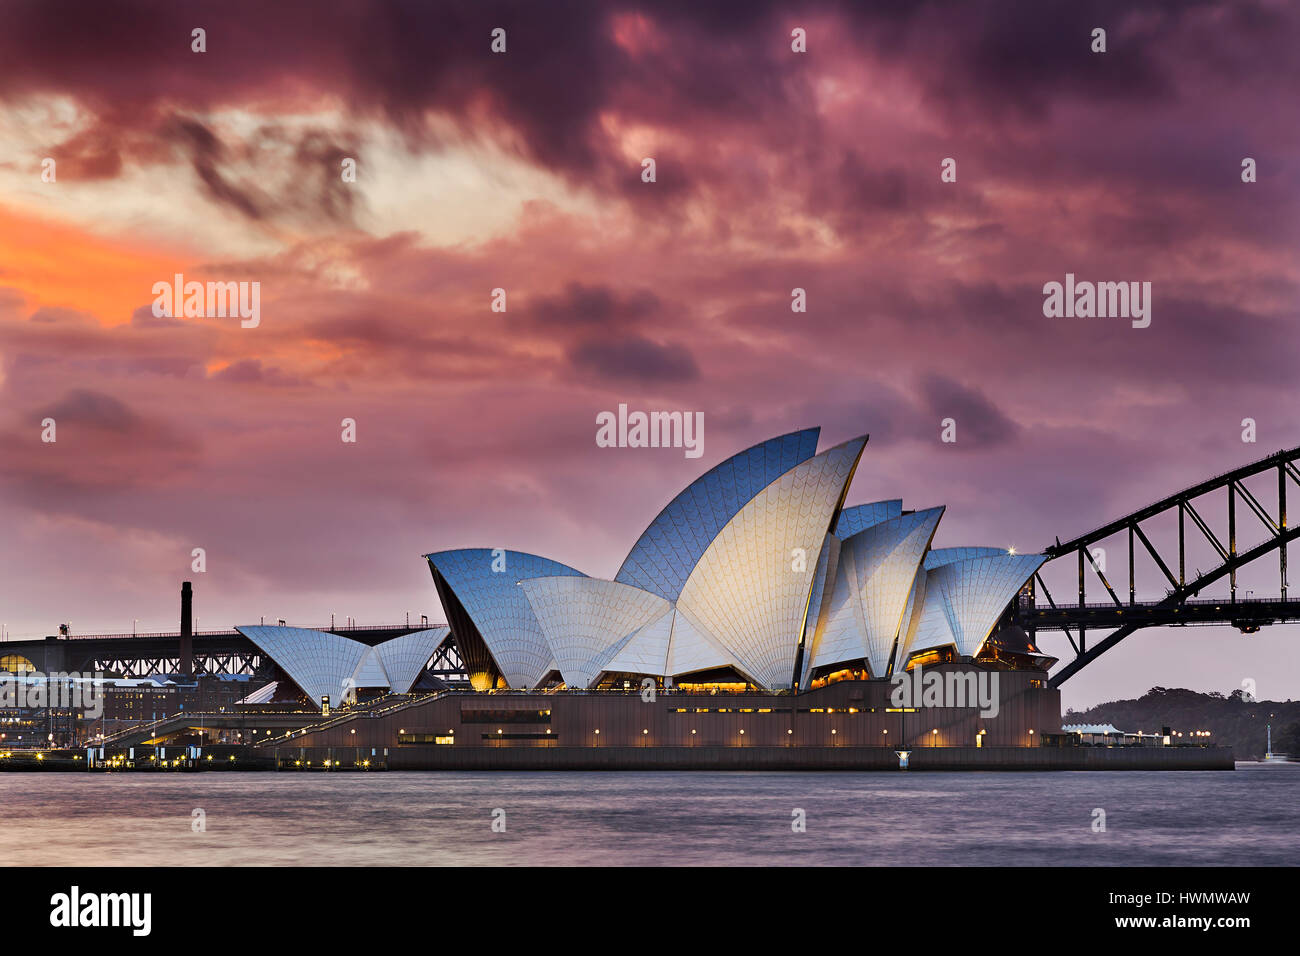 Sydney, Australia - 19 de marzo de 2017: el colorido atardecer a través de espesas nubes sobre mundo famosos - Sydney Opera House y el puente Harbour. Foto de stock